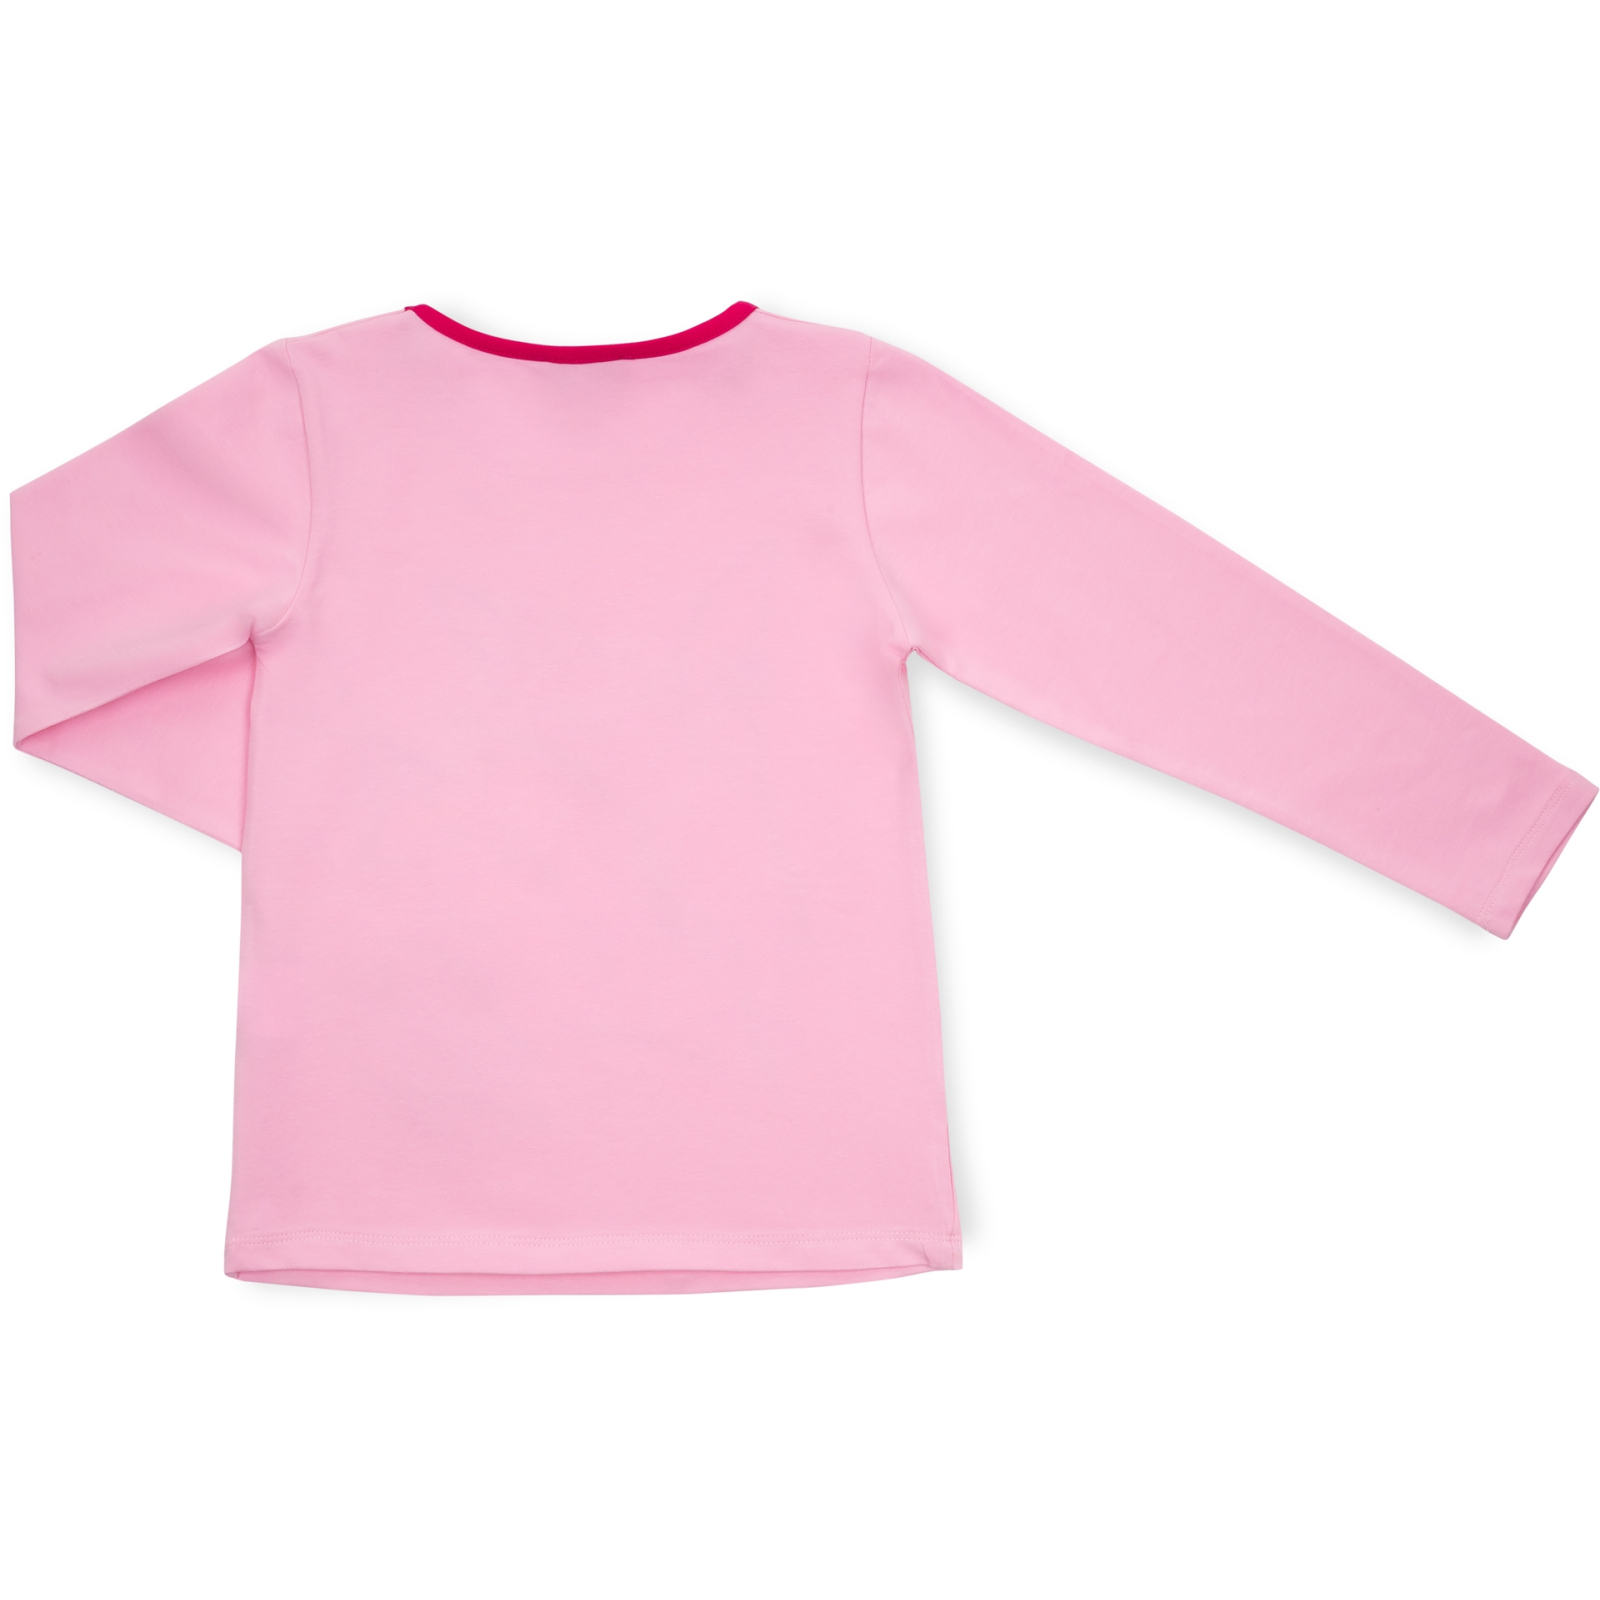 Пижама Matilda с оленями (10817-3-116G-pink) изображение 5